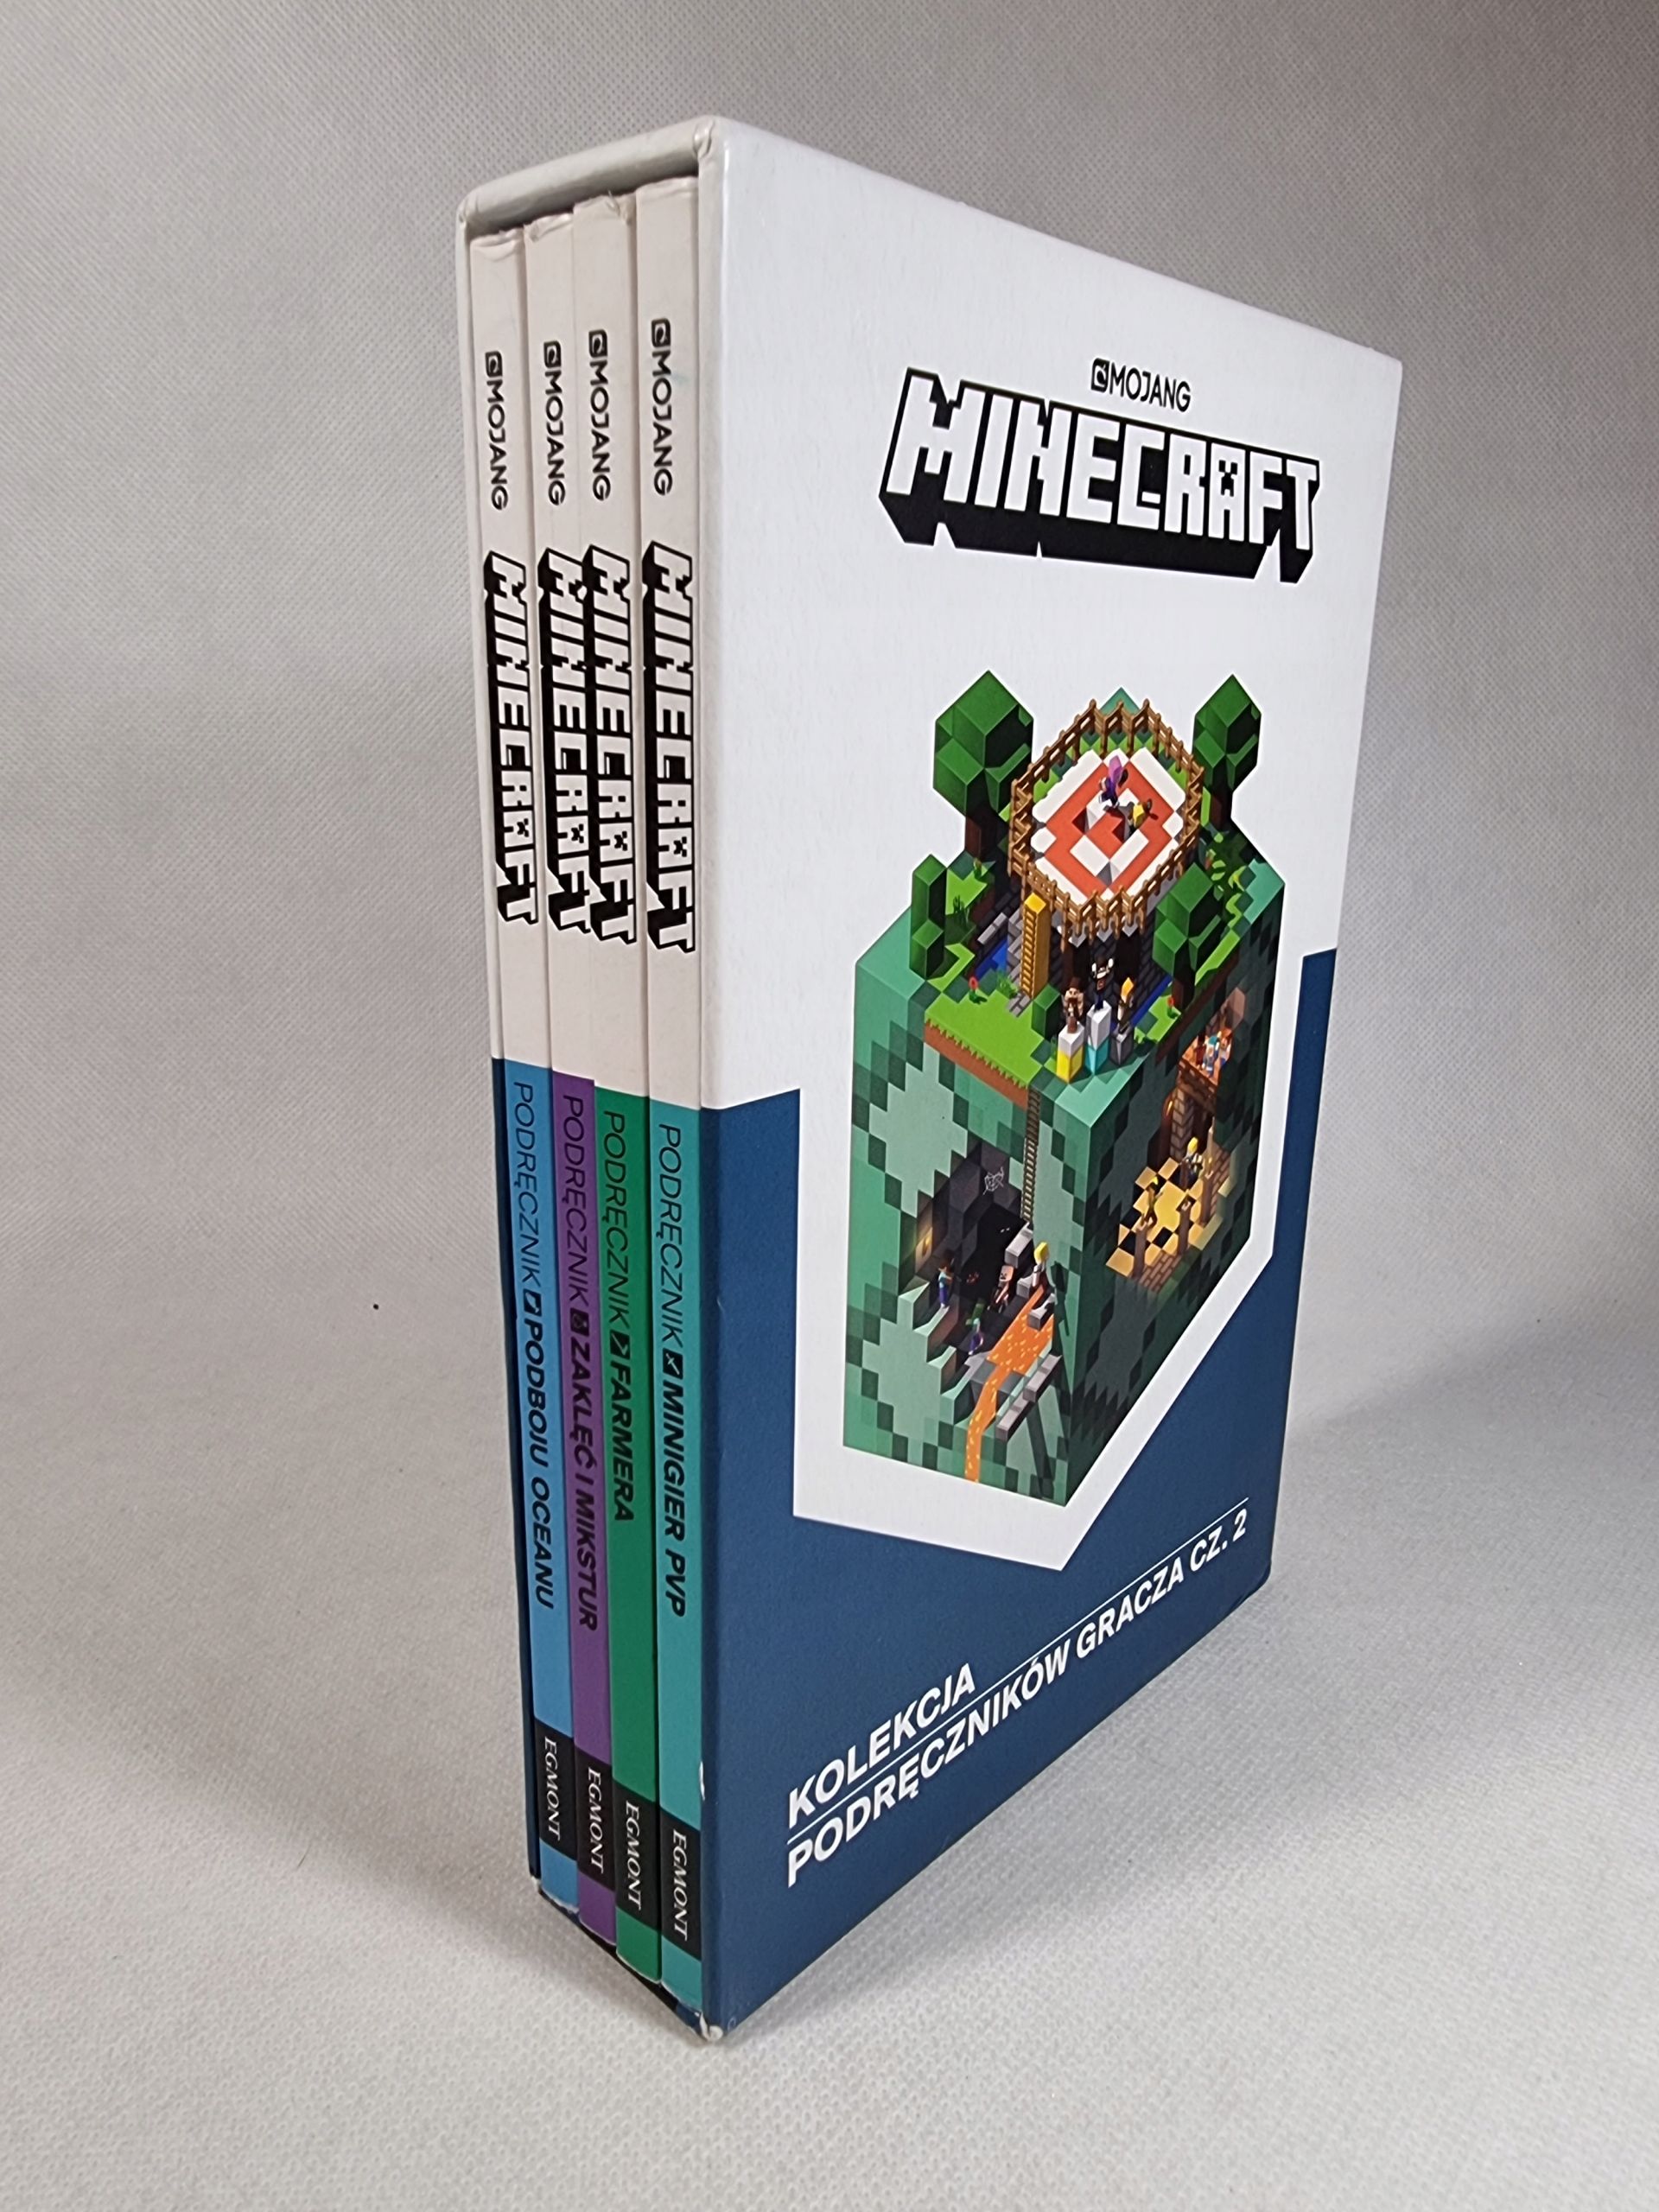 Minecraft / Kolekcja Podręczników Gracza Cz.2 / Box